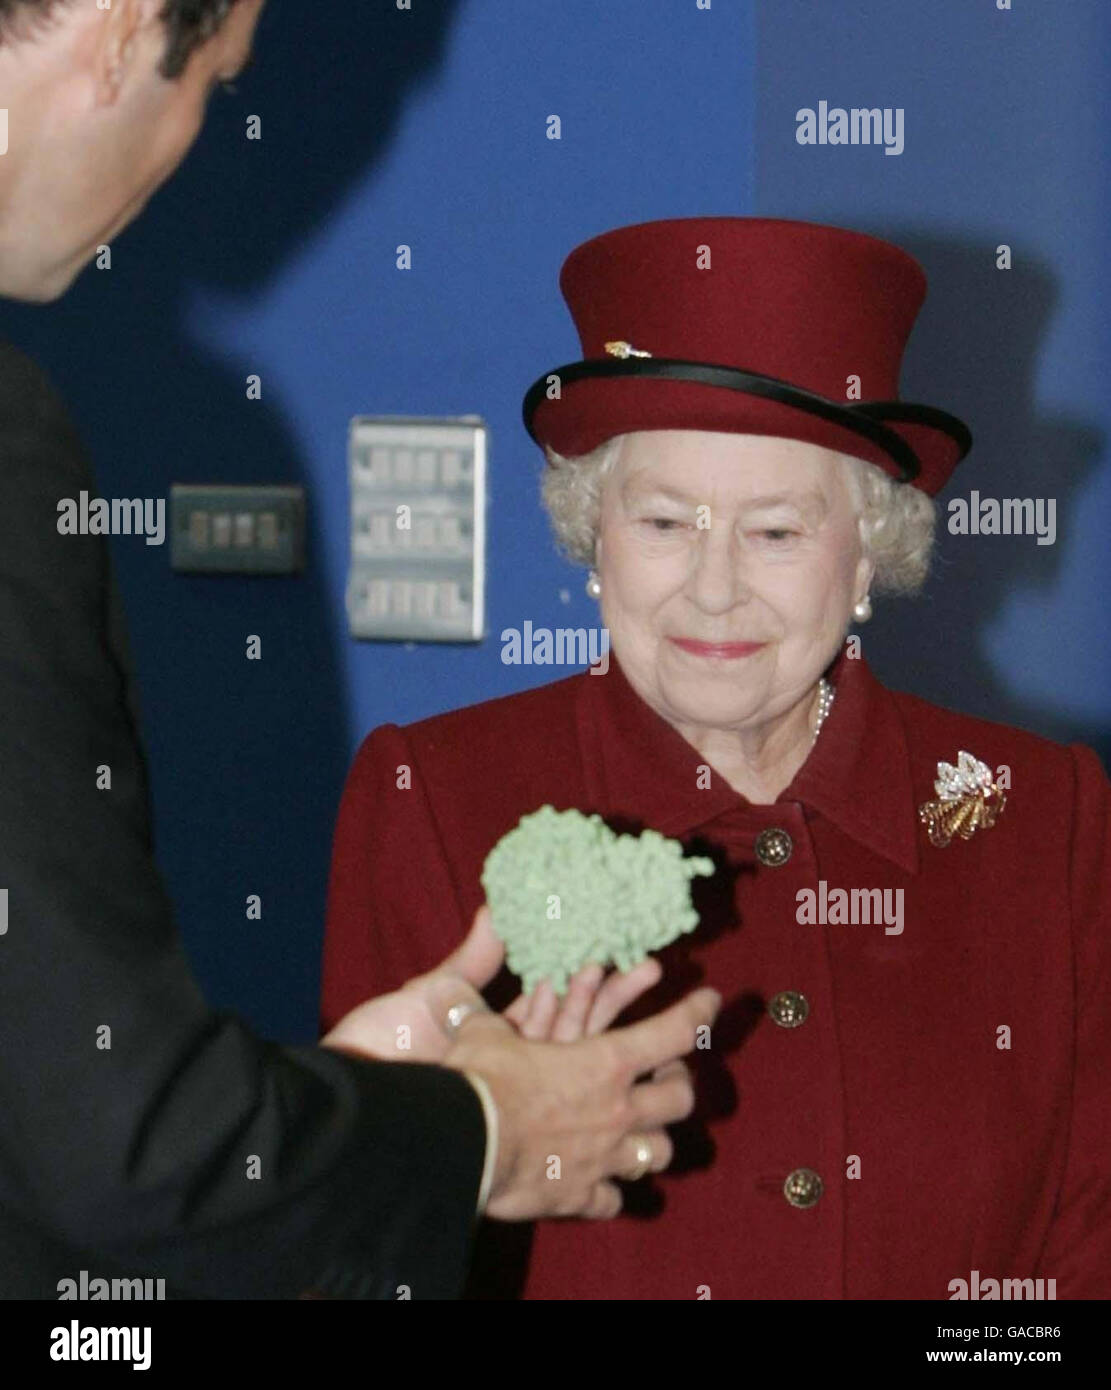 Queen Elizabeth II. Während ihrer Tour durch die neue Diamond Light Source in Didcot in Oxfordshire. Die Königin wird mit einem Modell eines 'Grippe Virus' (grüner Blob) während der Tour durch die Anlage, die das neue Diamond Light Source Synchrotron beherbergt, abgebildet. Stockfoto